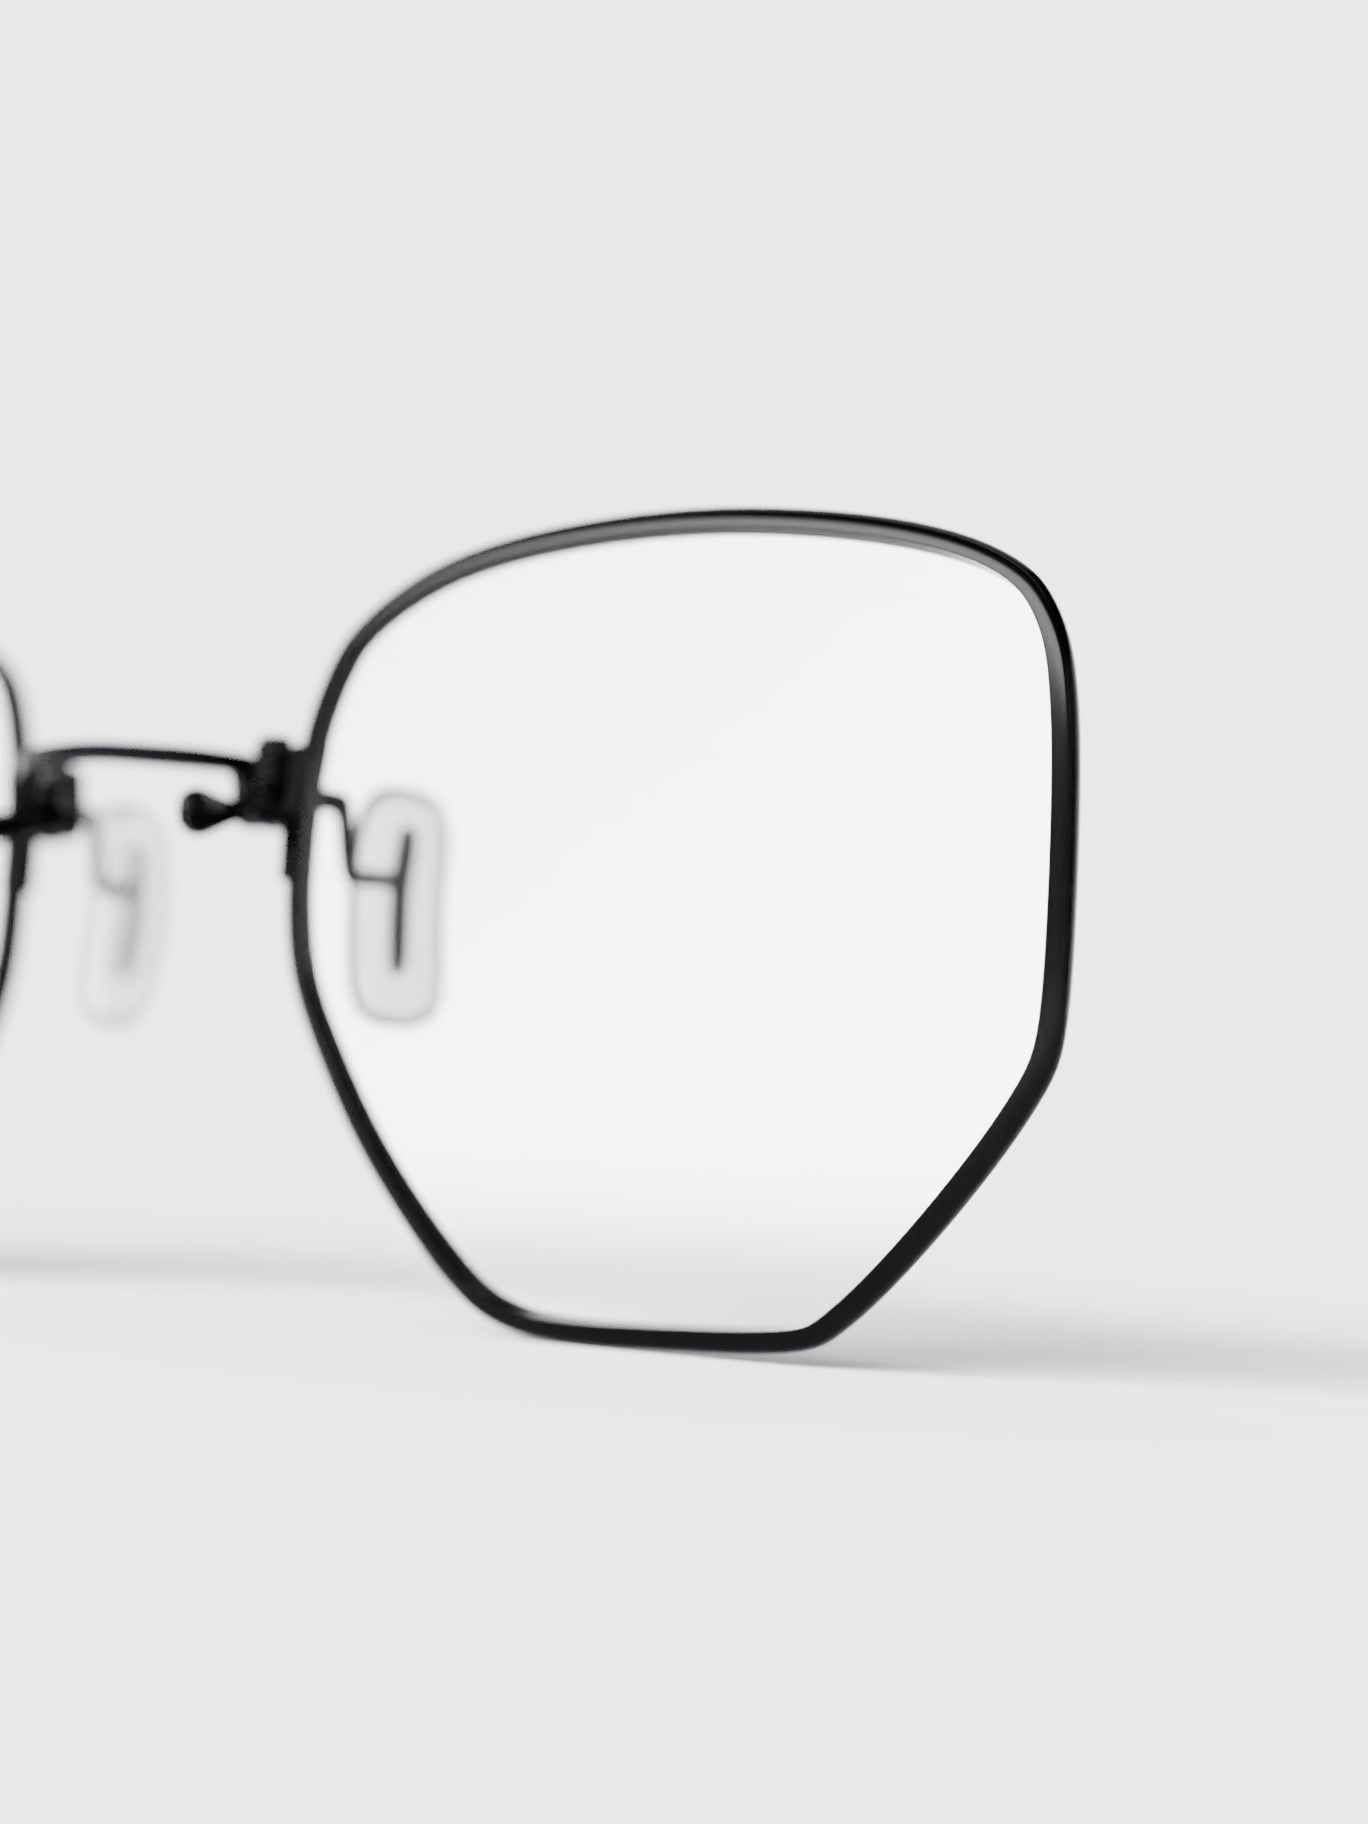 Glasses' right lens detail